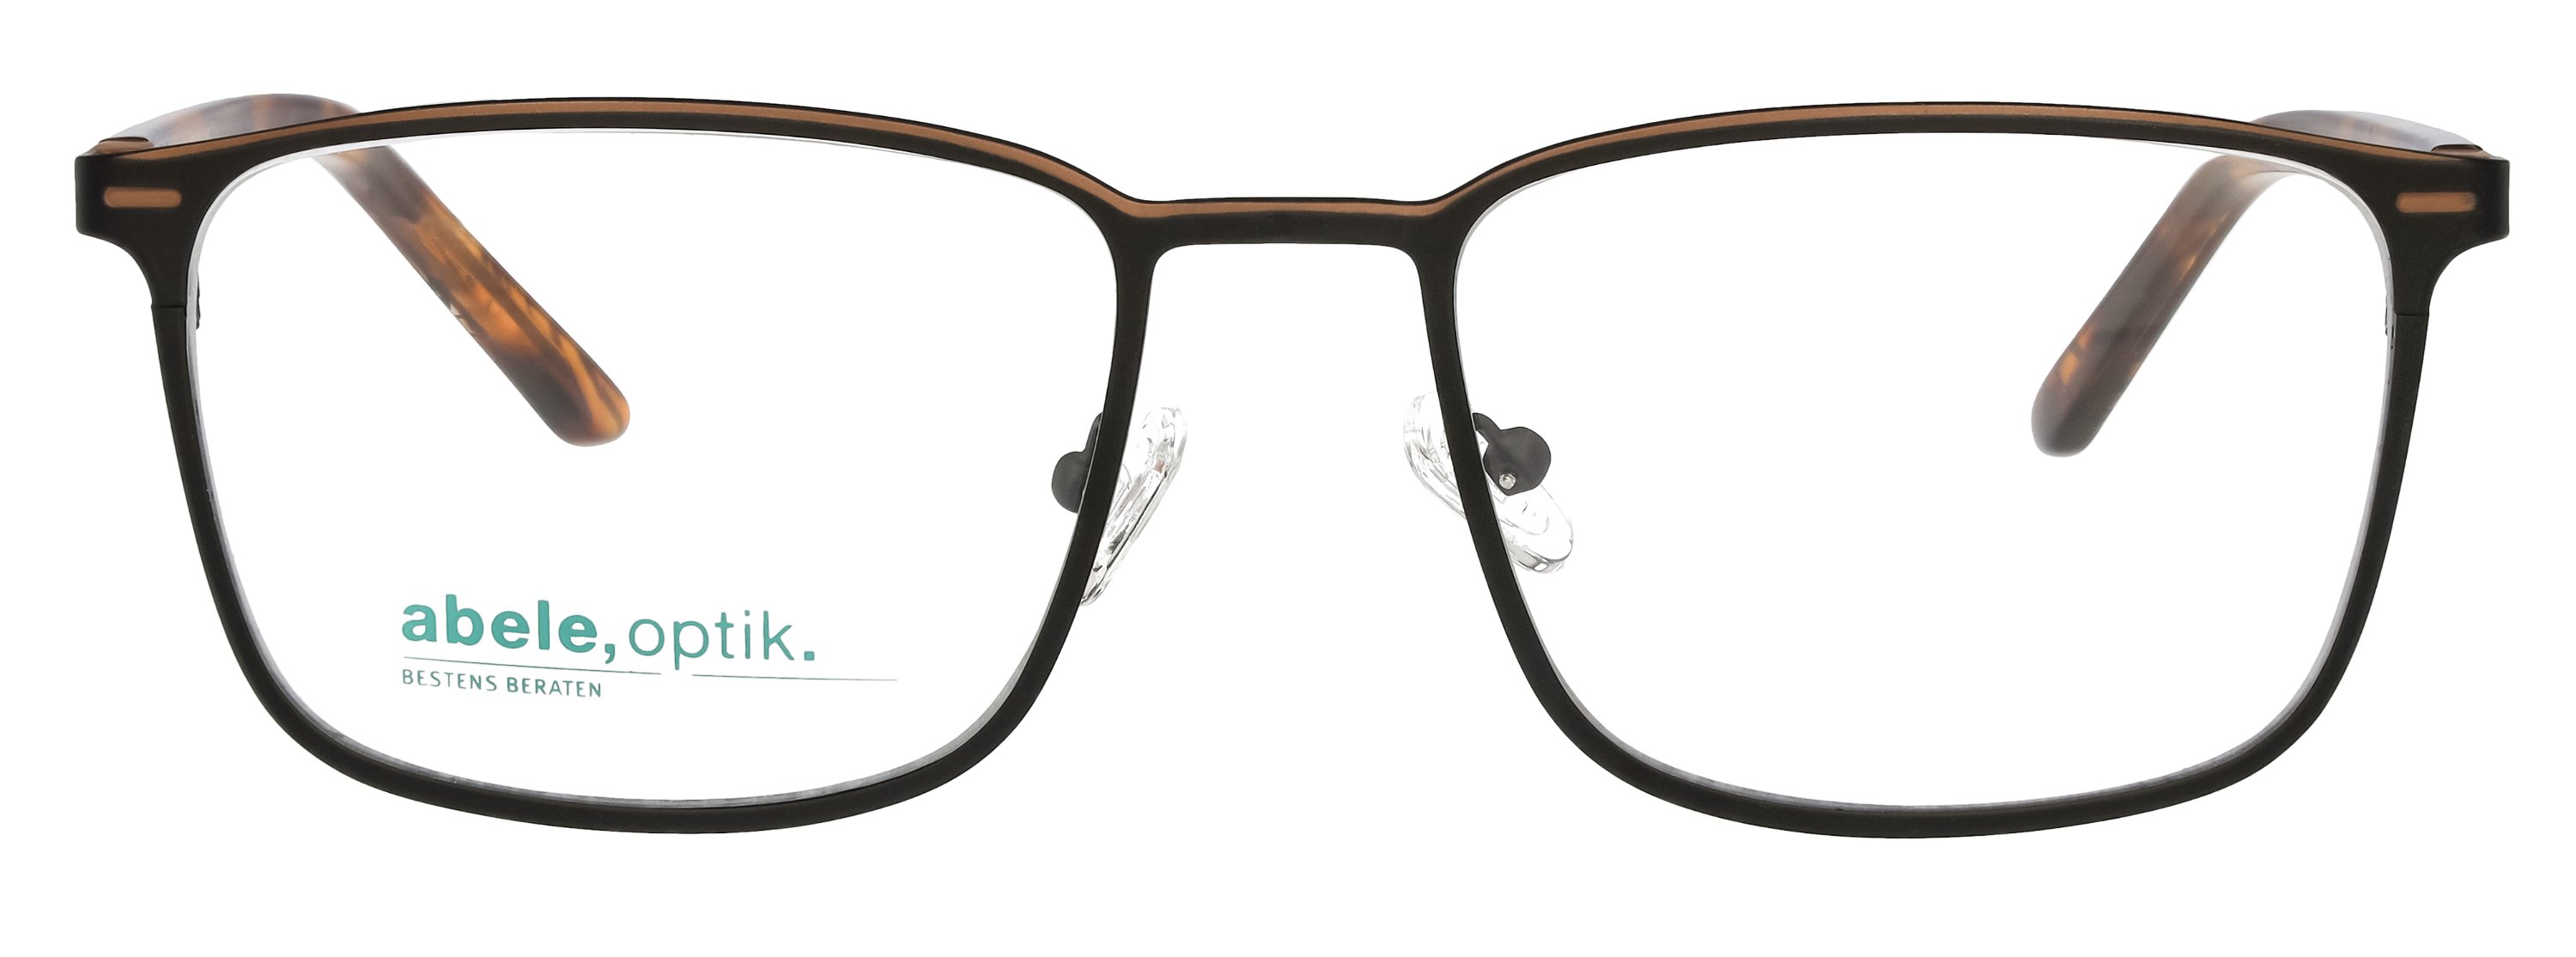 abele optik Brille für Herren in dunkelgrau / braun Bgl. havanna 148281